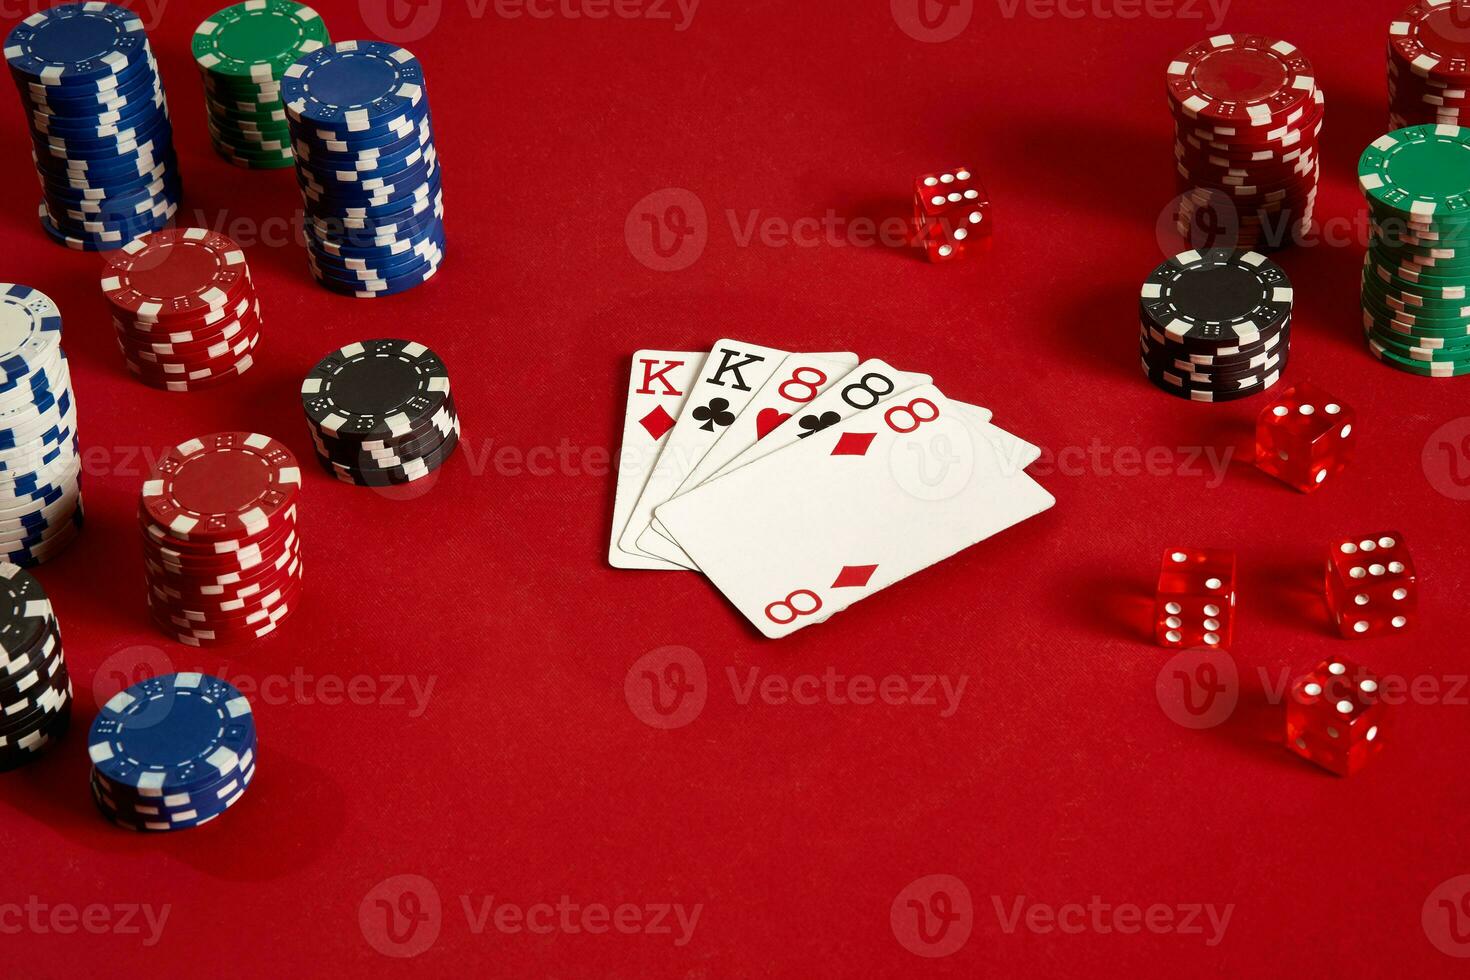 póker tarjetas y juego papas fritas en rojo antecedentes foto